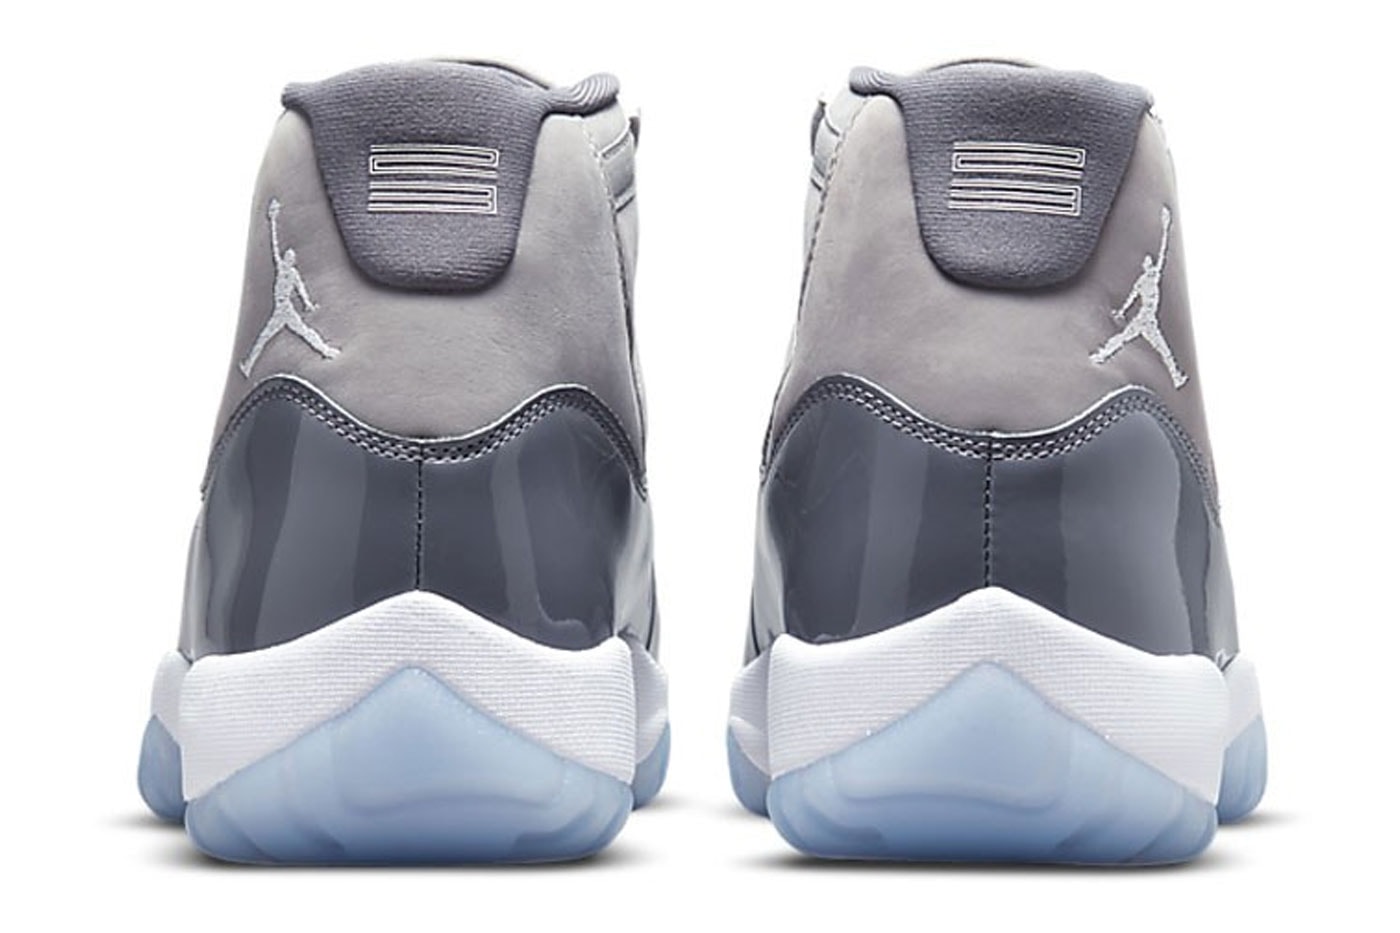 誕生20周年を迎えるエアジョーダン 11 “クールグレー”が復刻 Official Look at the Air Jordan 11 “Cool Grey” Footwear 